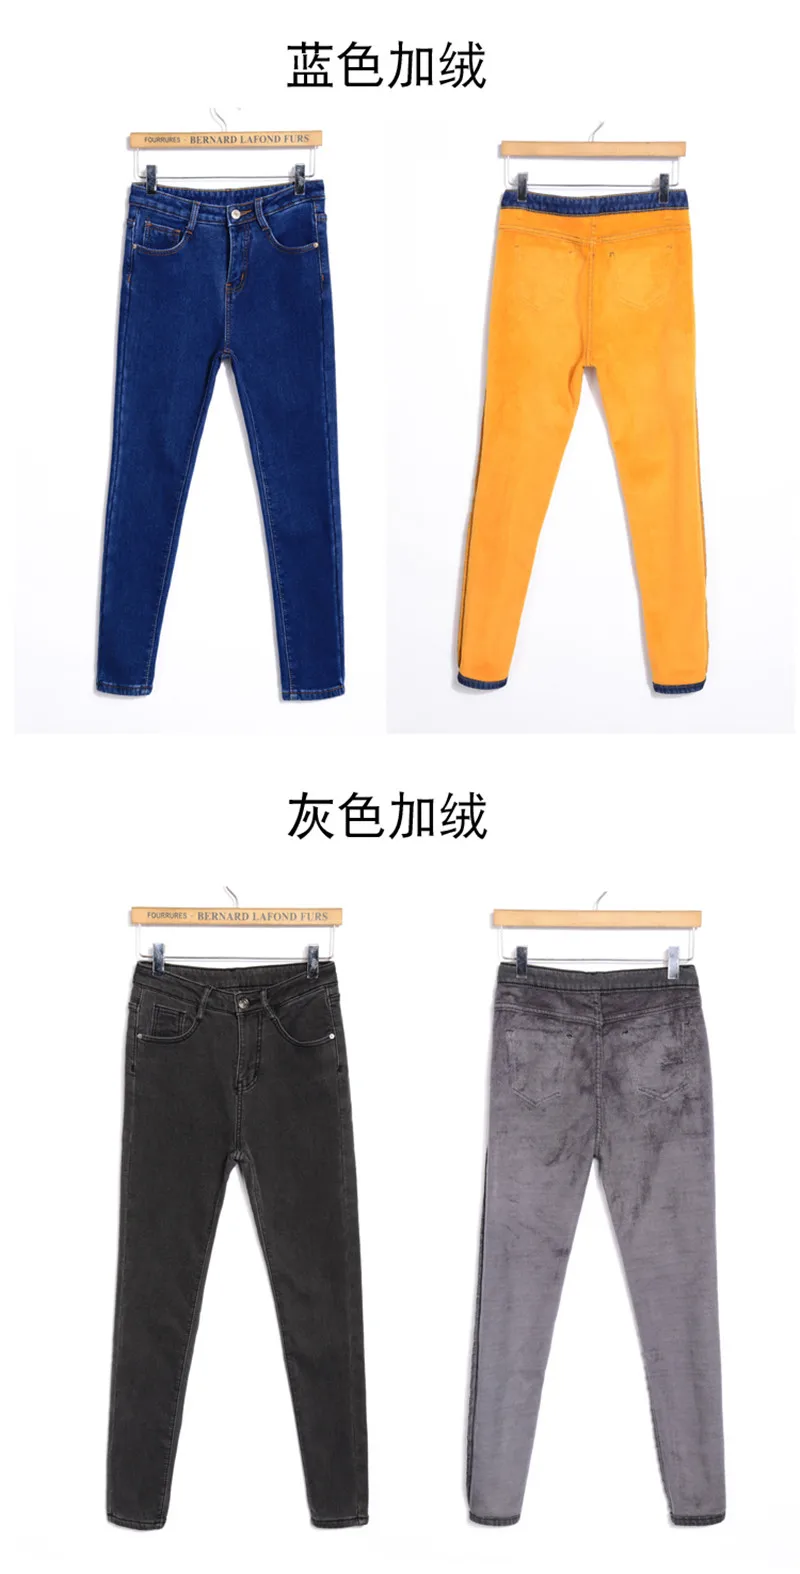 Плюс бархатные толстые женские джинсы зимние узкие брюки женские теплые джинсы с высокой талией длинные джинсы стрейч черные джинсы C5758